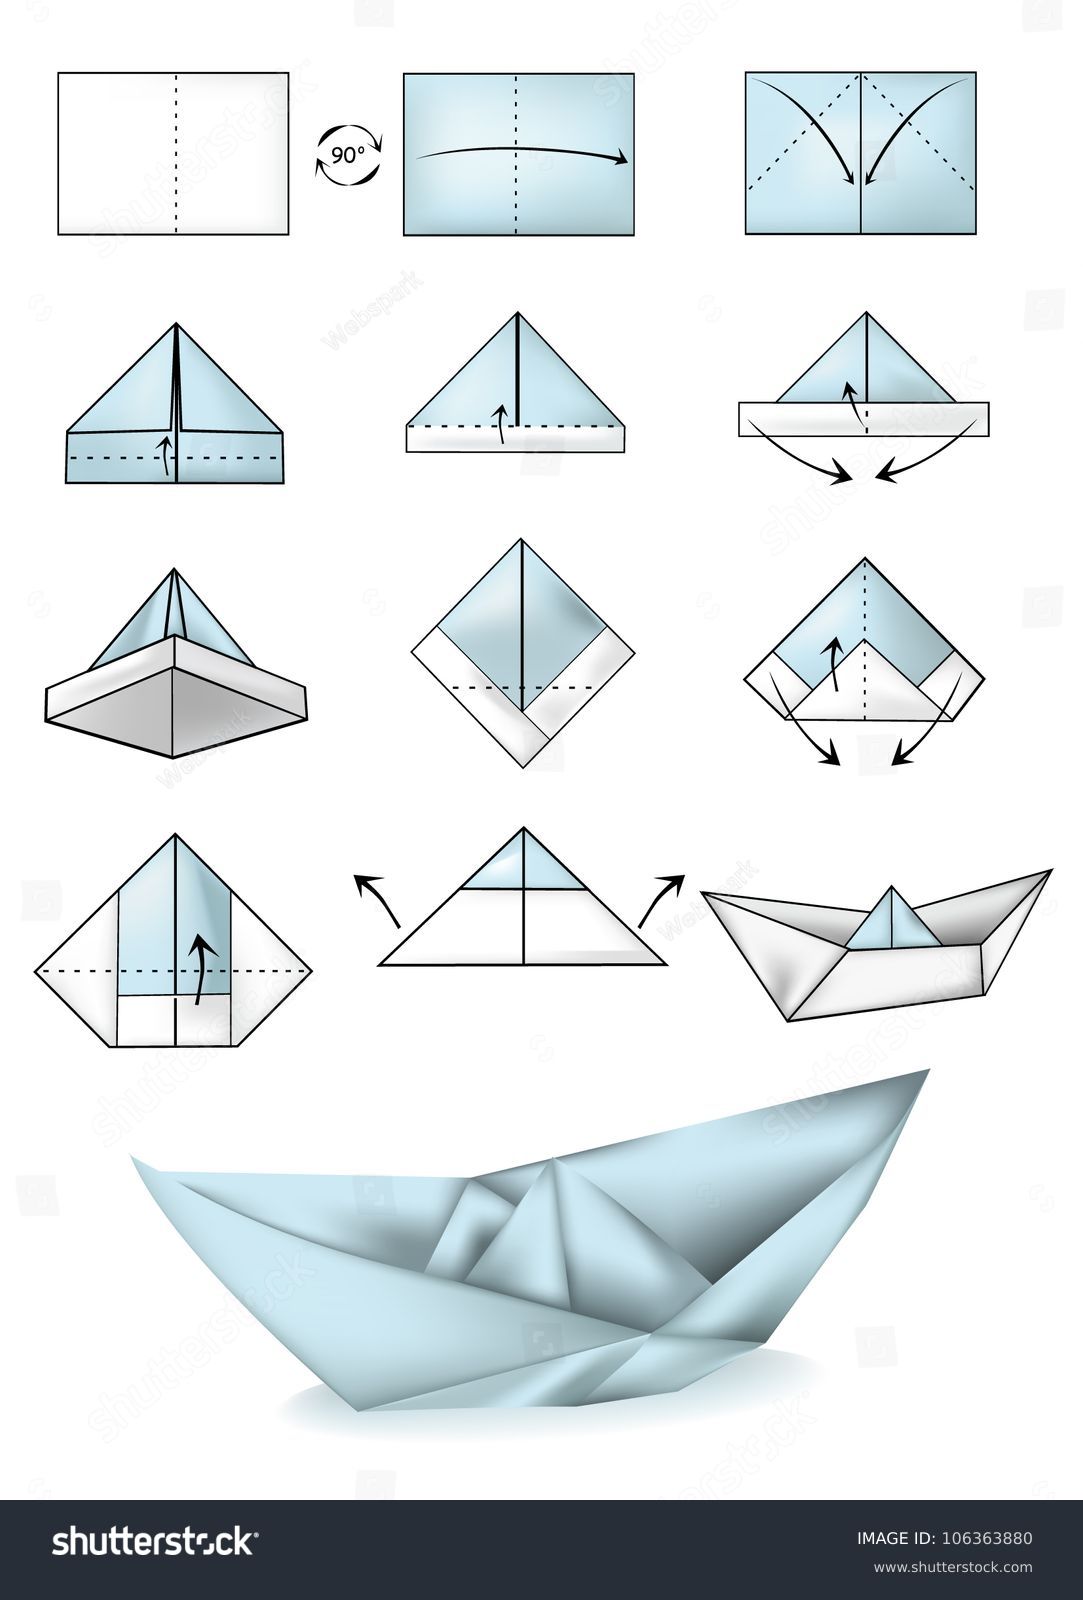 Paper Boat Instructions Illustration Tutorial Stock Vector 106363880 Shutterstock